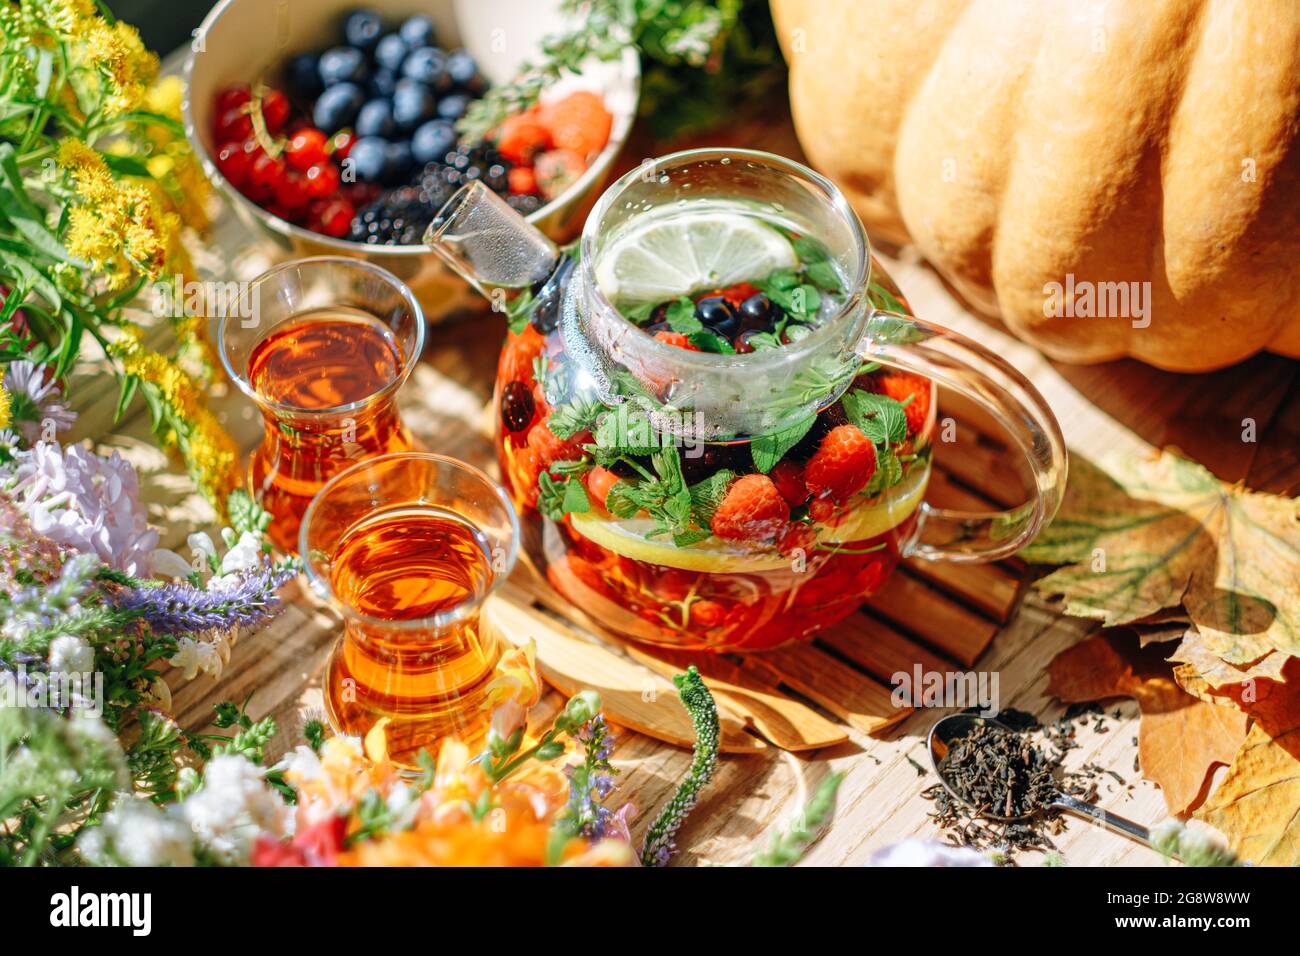 Natürlicher aromatischer Früchtetee in einer transparenten Teekane und in einer Tasse zwischen Beeren und Blumen. Wärmender aromatischer Tee mit einem tiefen Aroma von Beeren und Wildf Stockfoto